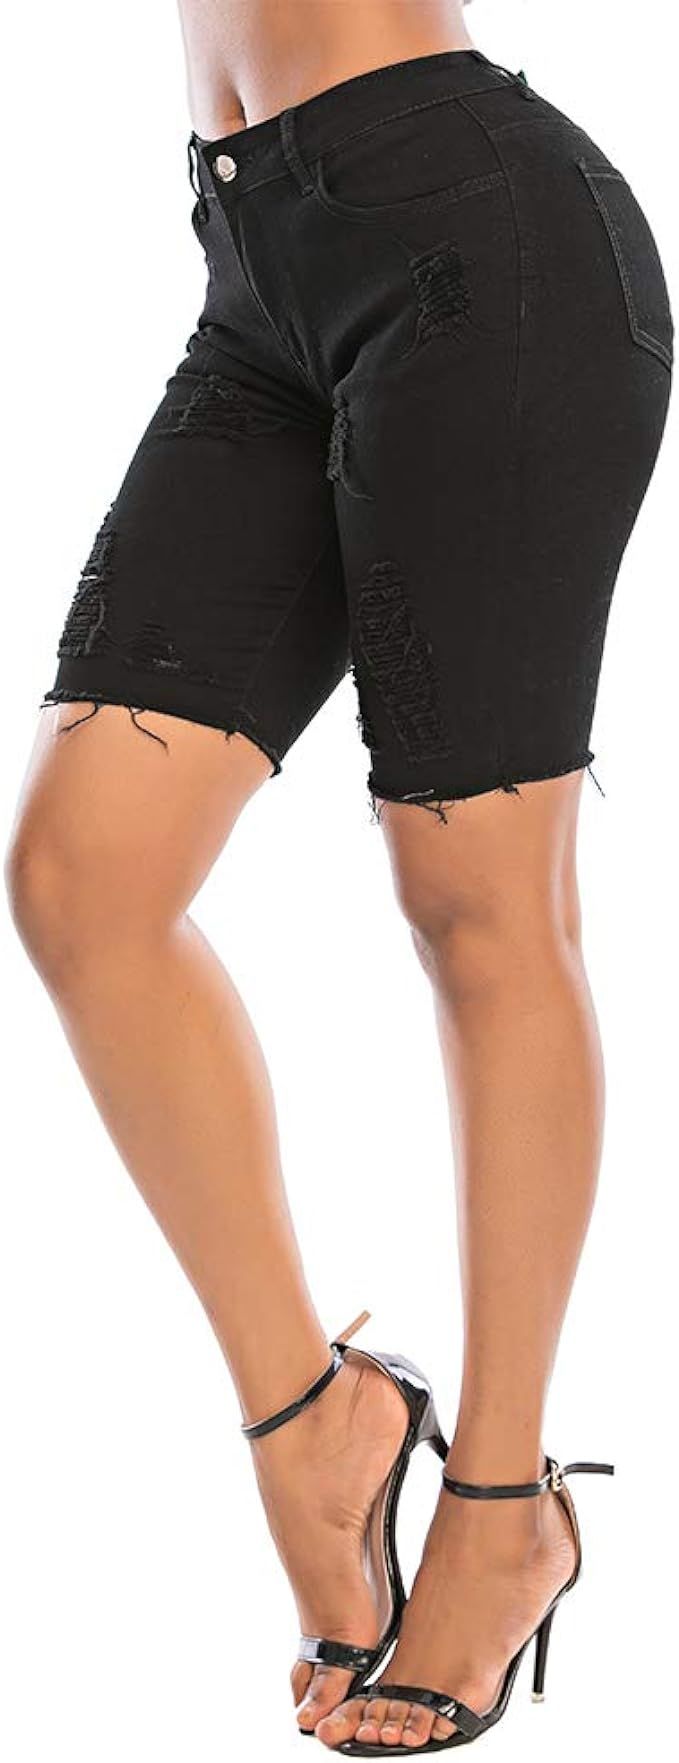 THUNDER STAR Womens Denim Bermuda Shorts,Mid Rise Short Jeans,Frayed Raw Hem | Amazon (US)